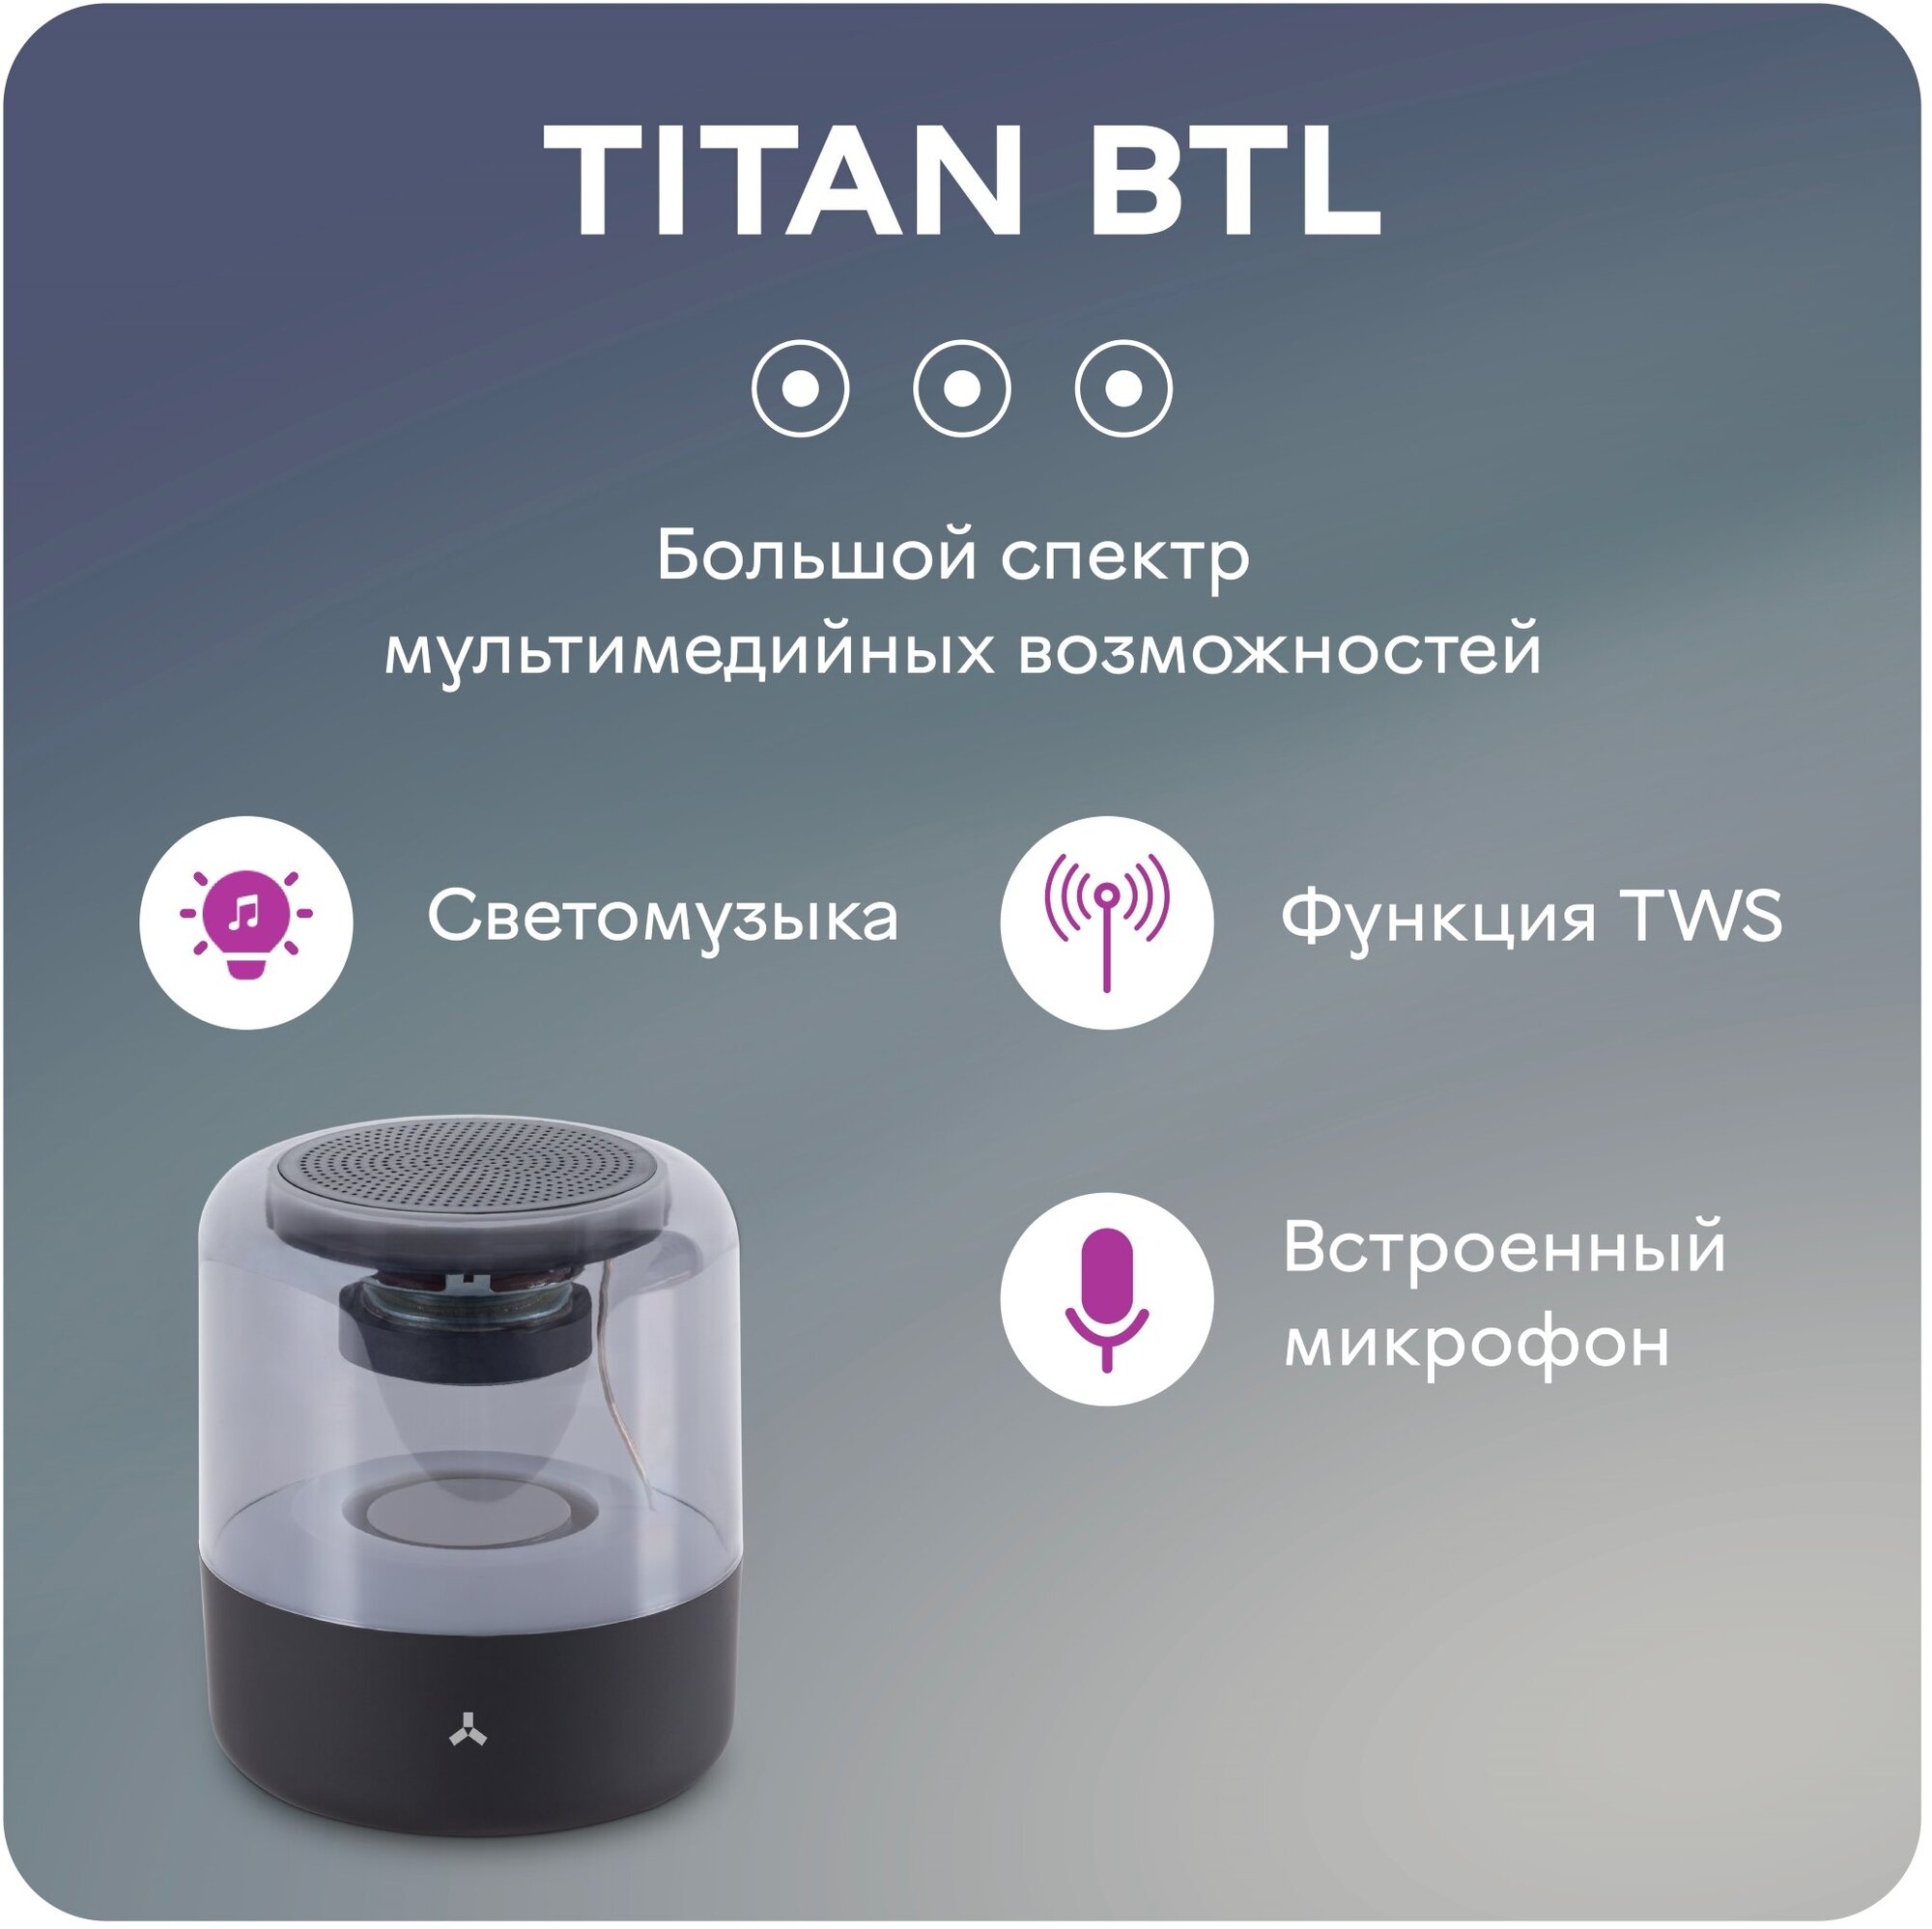 Беспроводная колонка TITAN BTL Black AccesStyle - фото №2